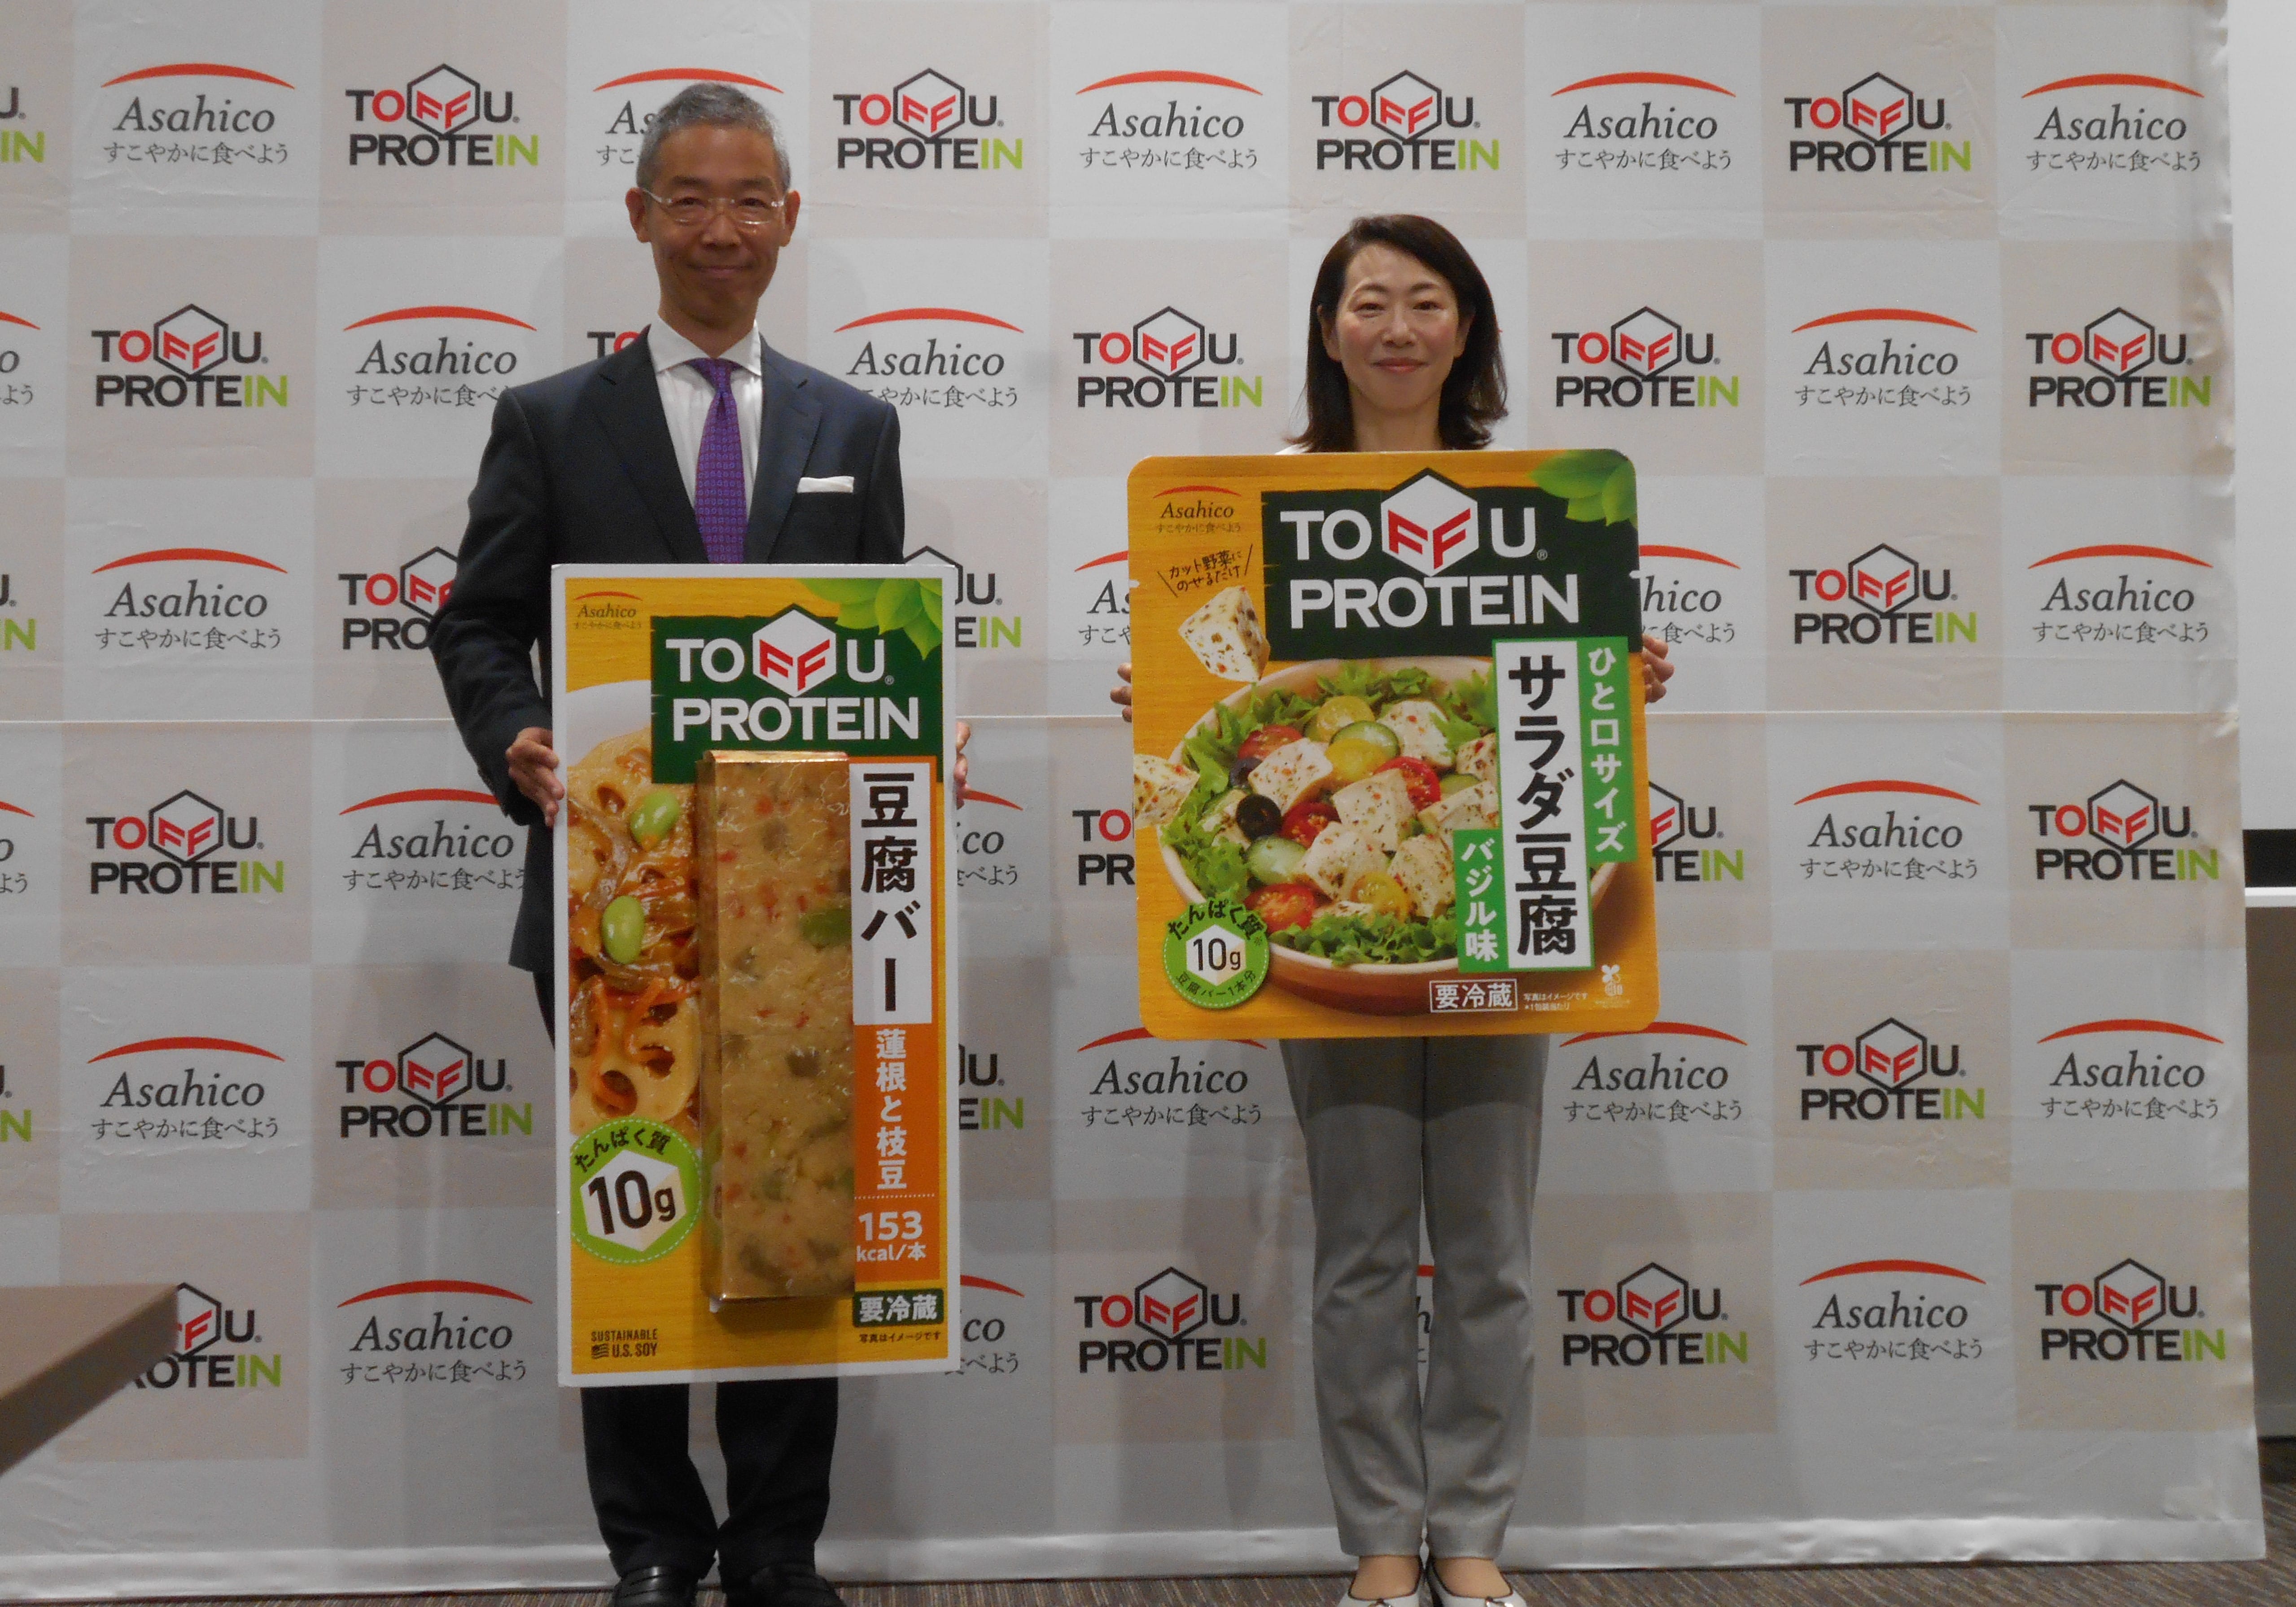 豆腐の市場縮小続くなかで大ヒットの「豆腐バー」、日本食人気に乗り海外進出の画像1